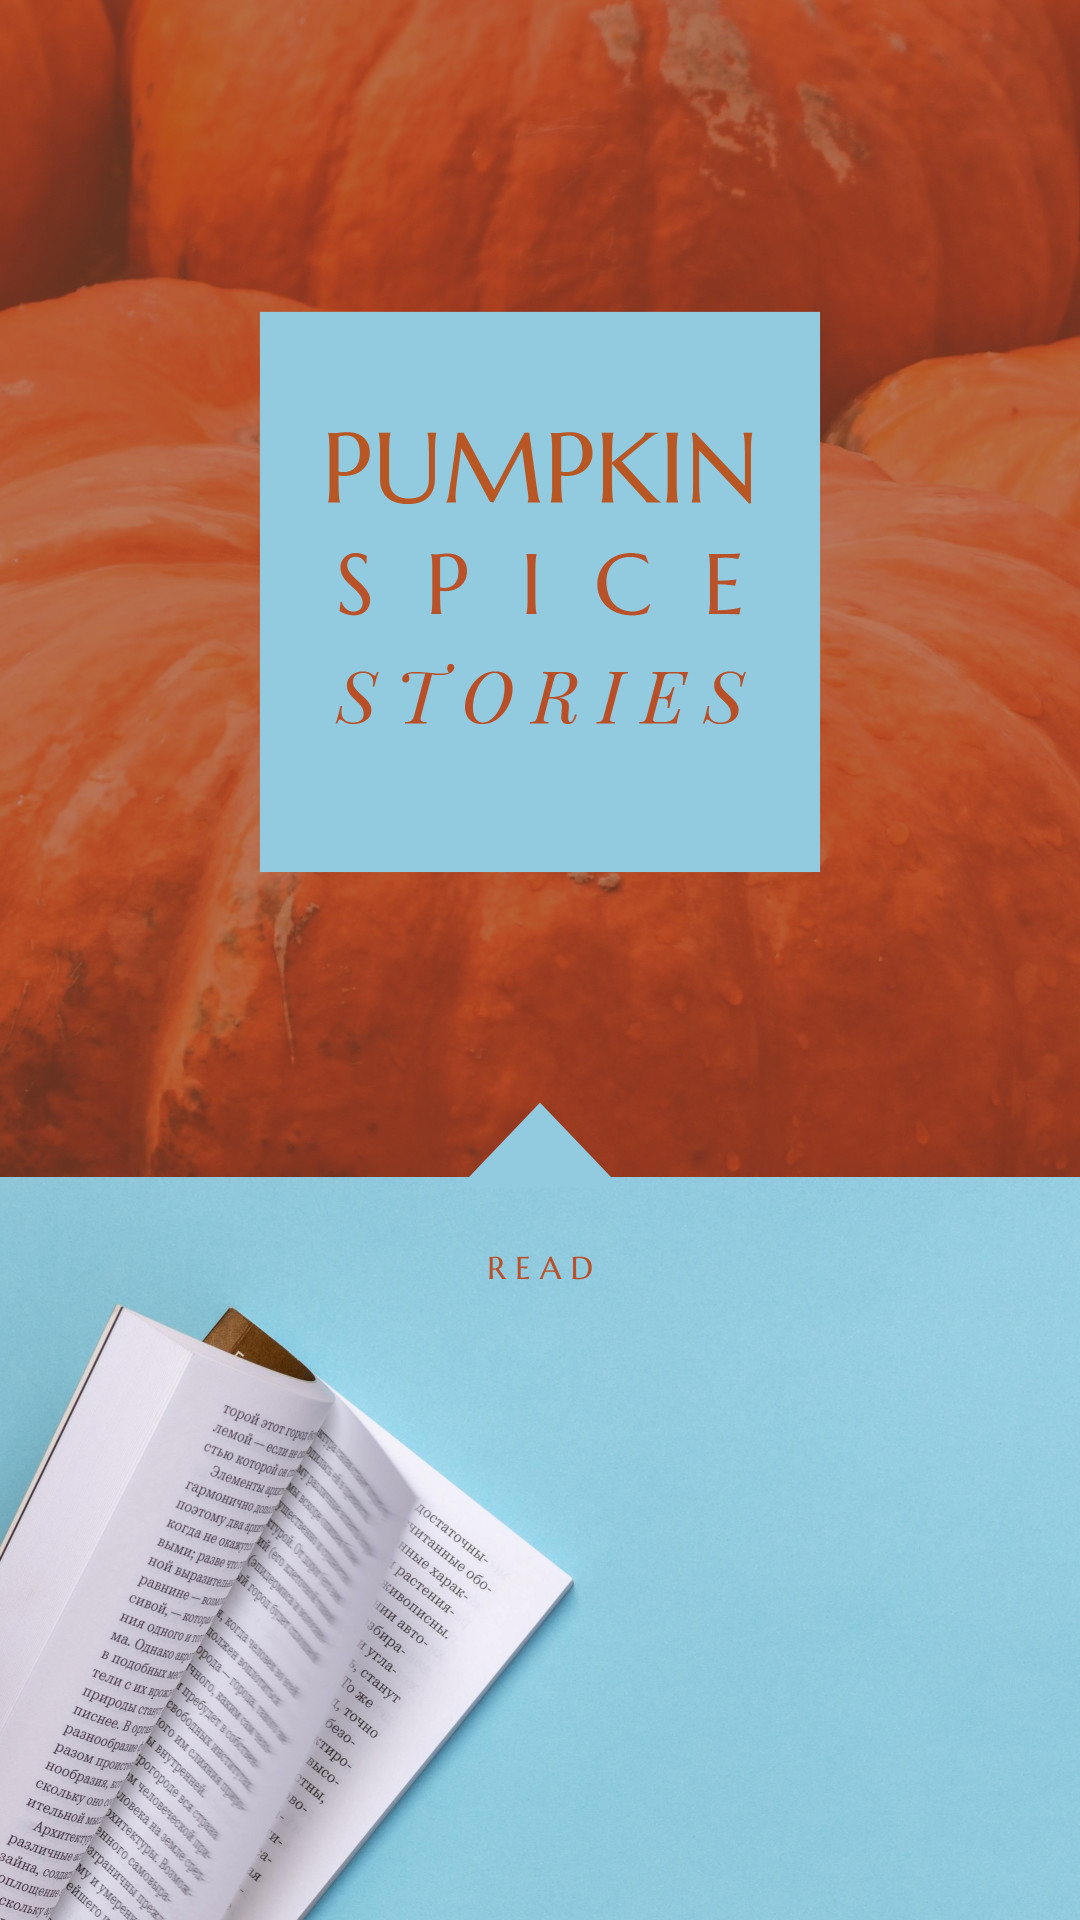 Pumpkin spice stories